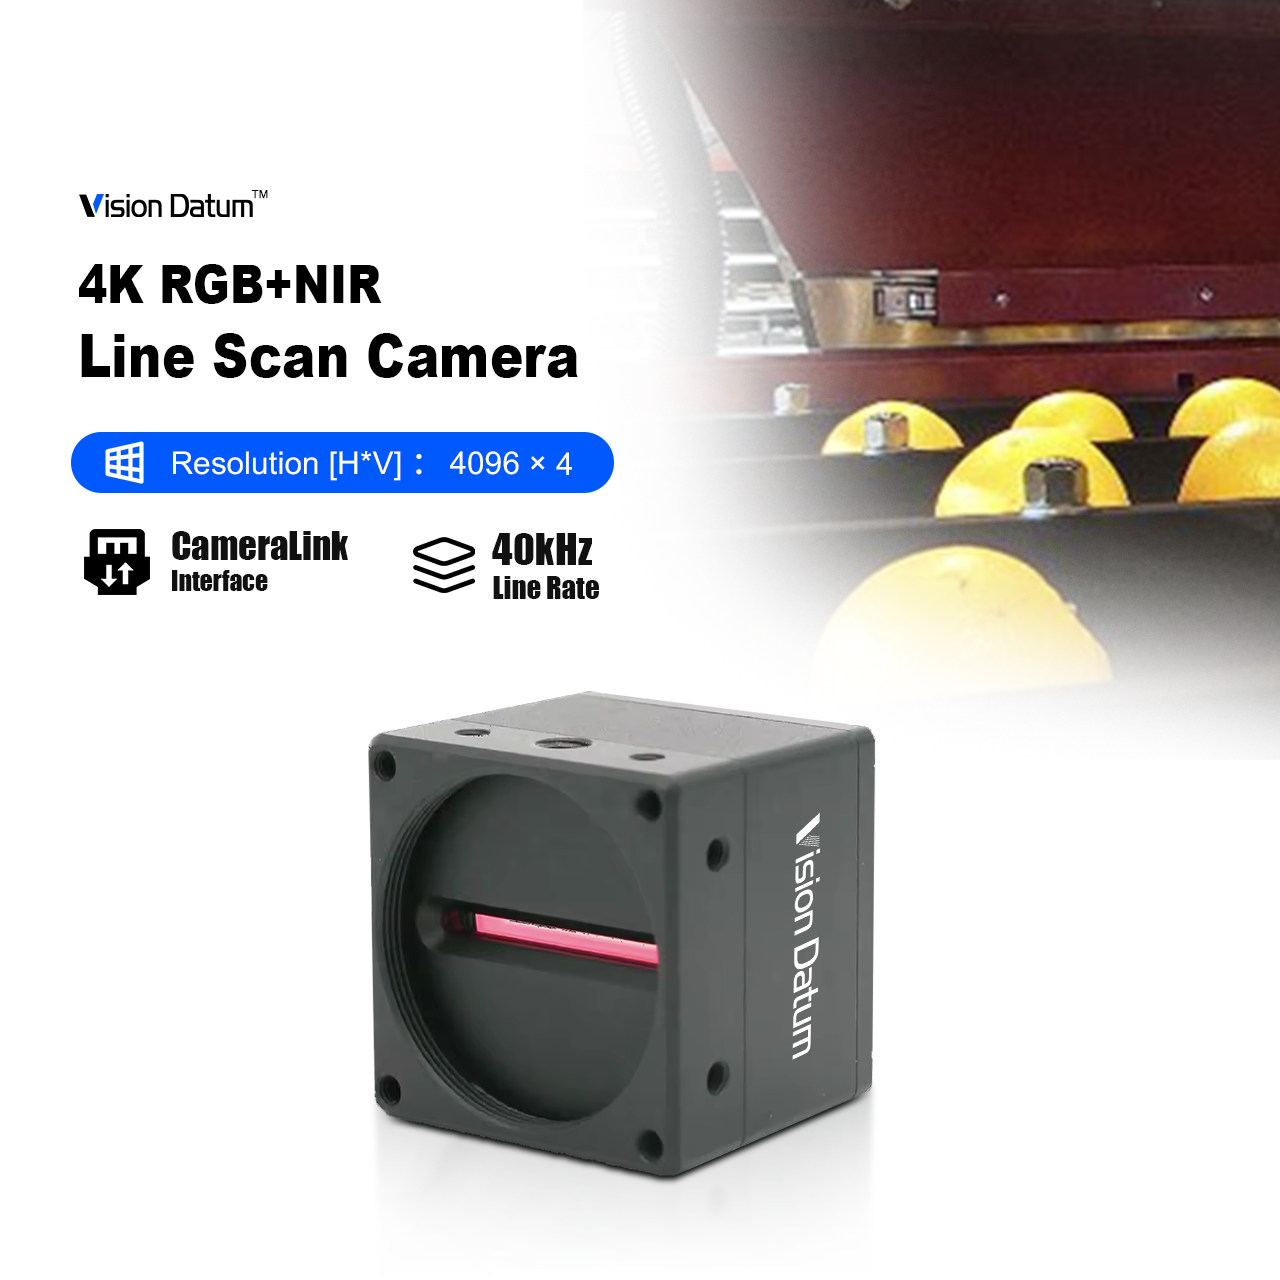 камера линейного сканирования 4k 40KHz RGB около инфракрасной области для обнаружения дефектов